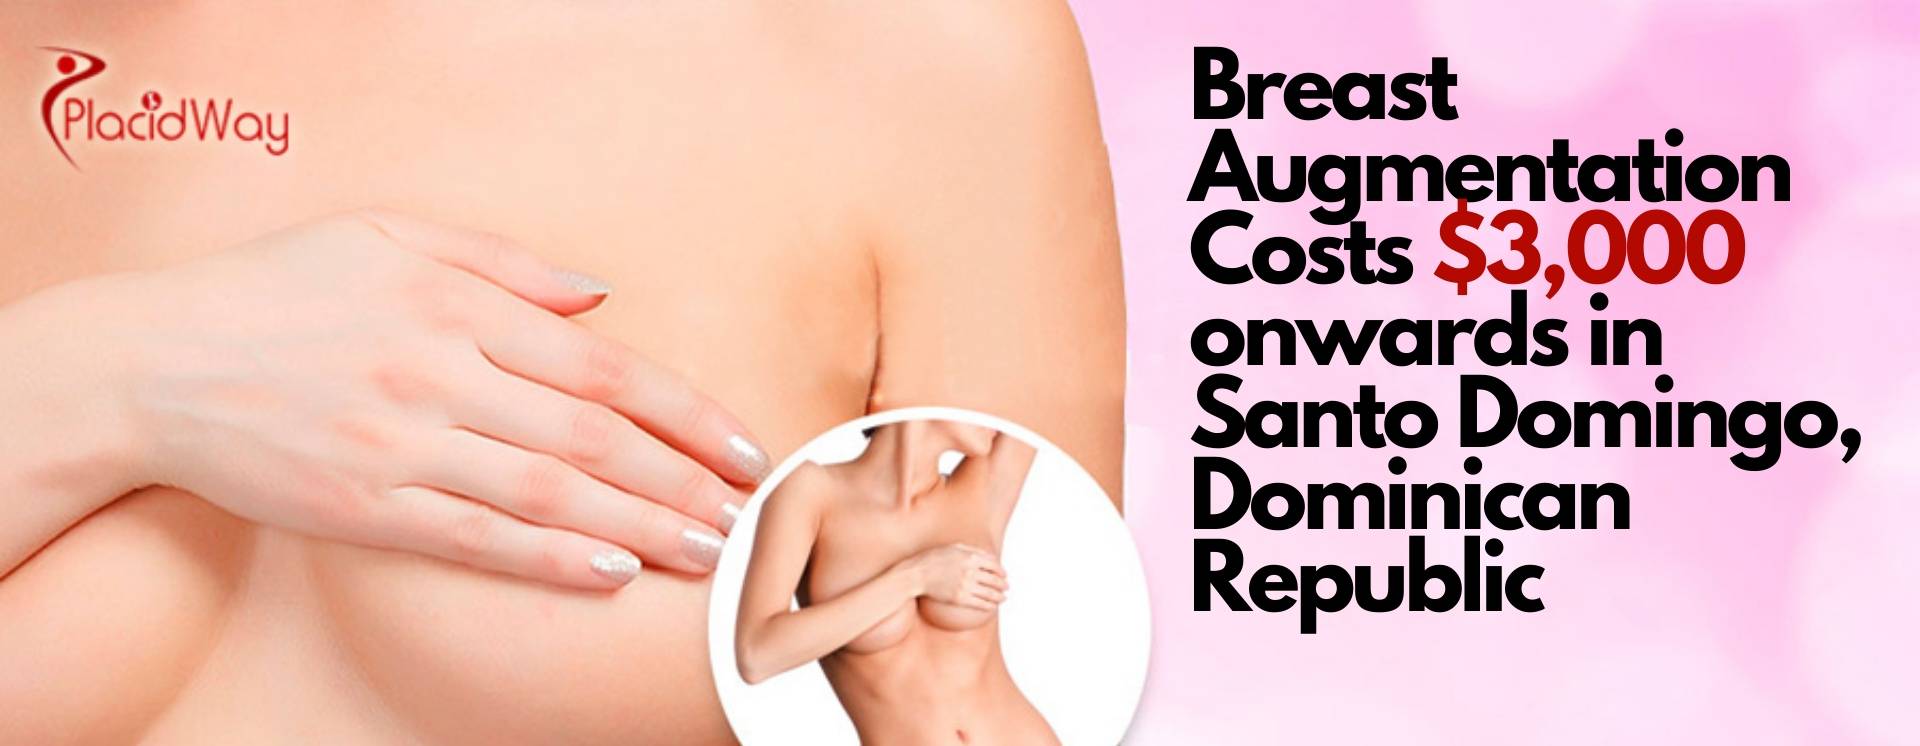 Breast Augmentation Dominican Republic Cost